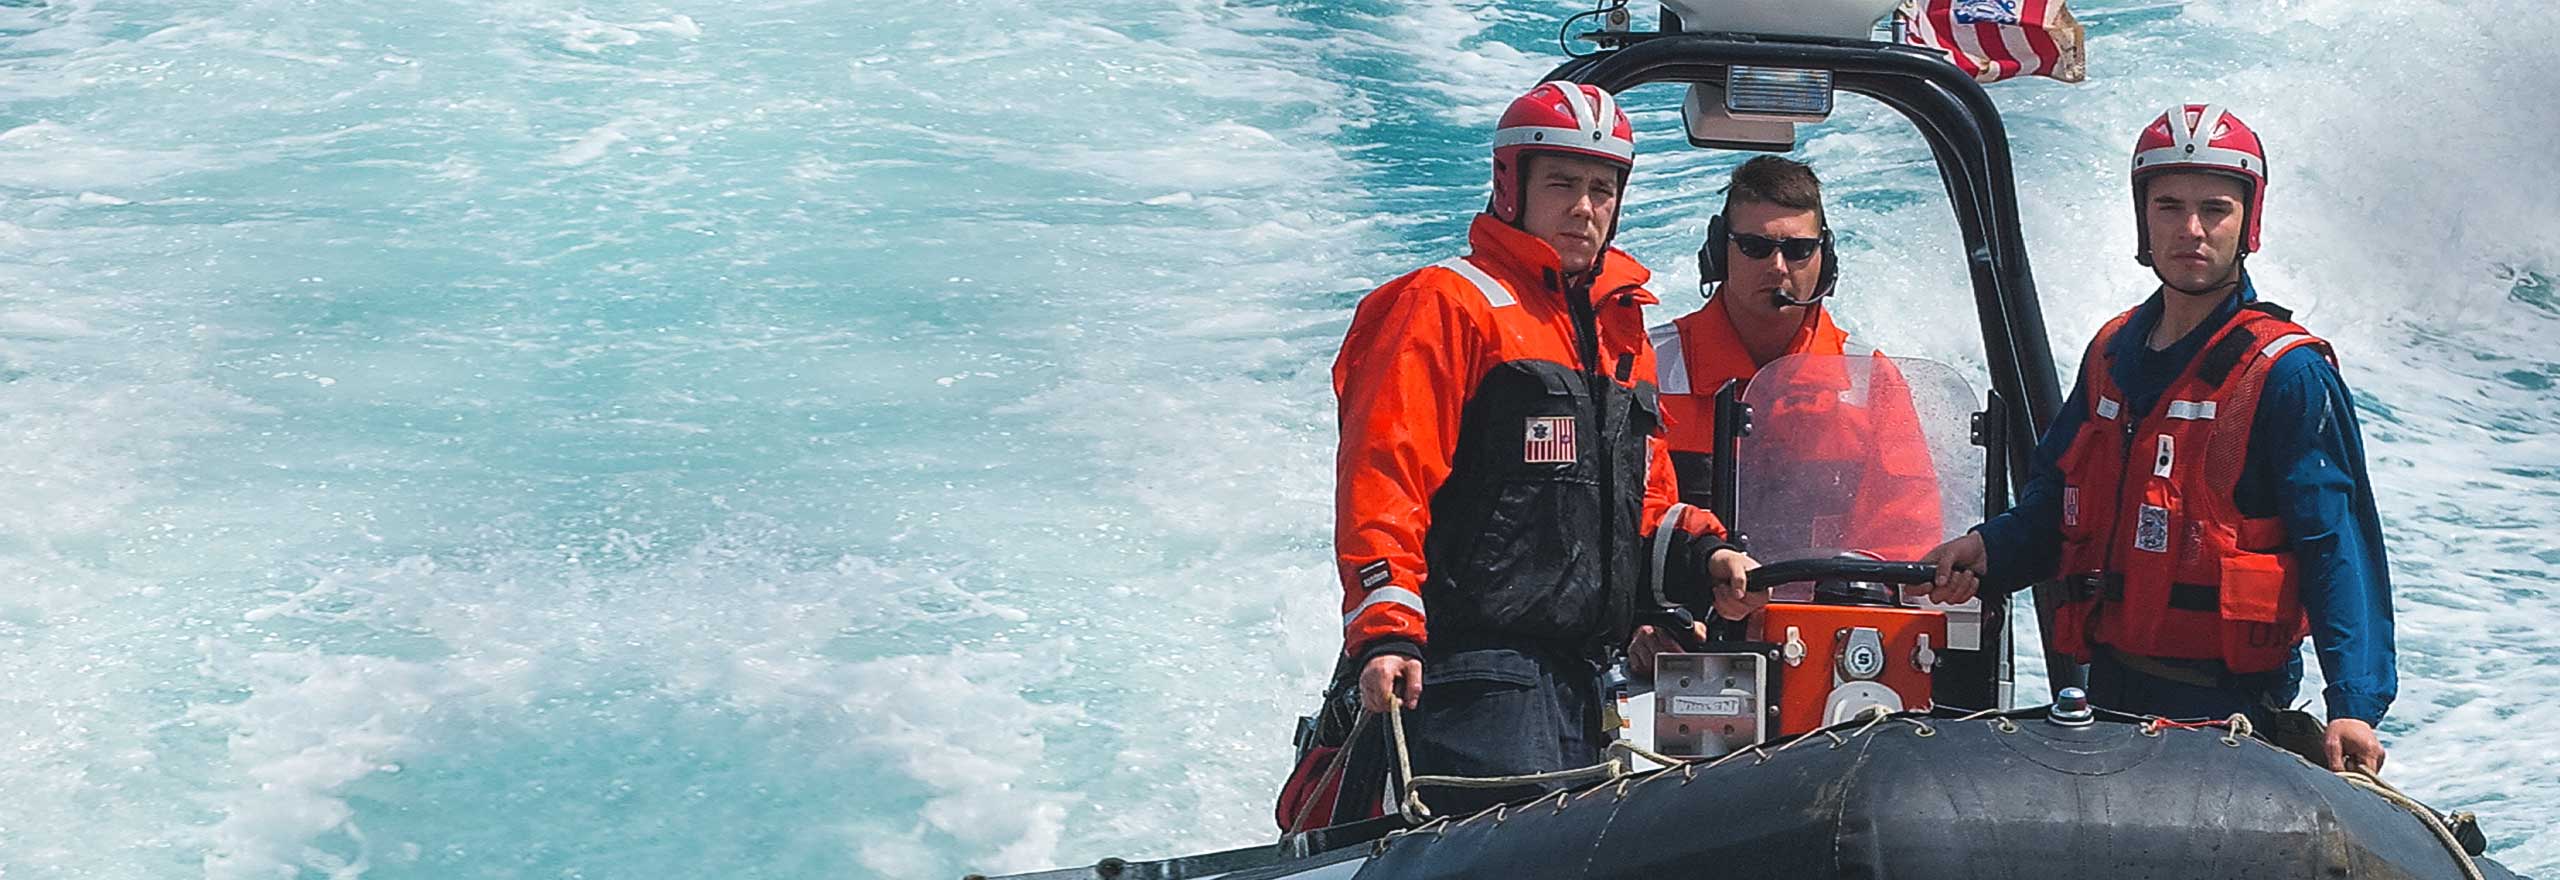 Membres de la Garde côtière des États-Unis à bord d’un bateau en eaux libres